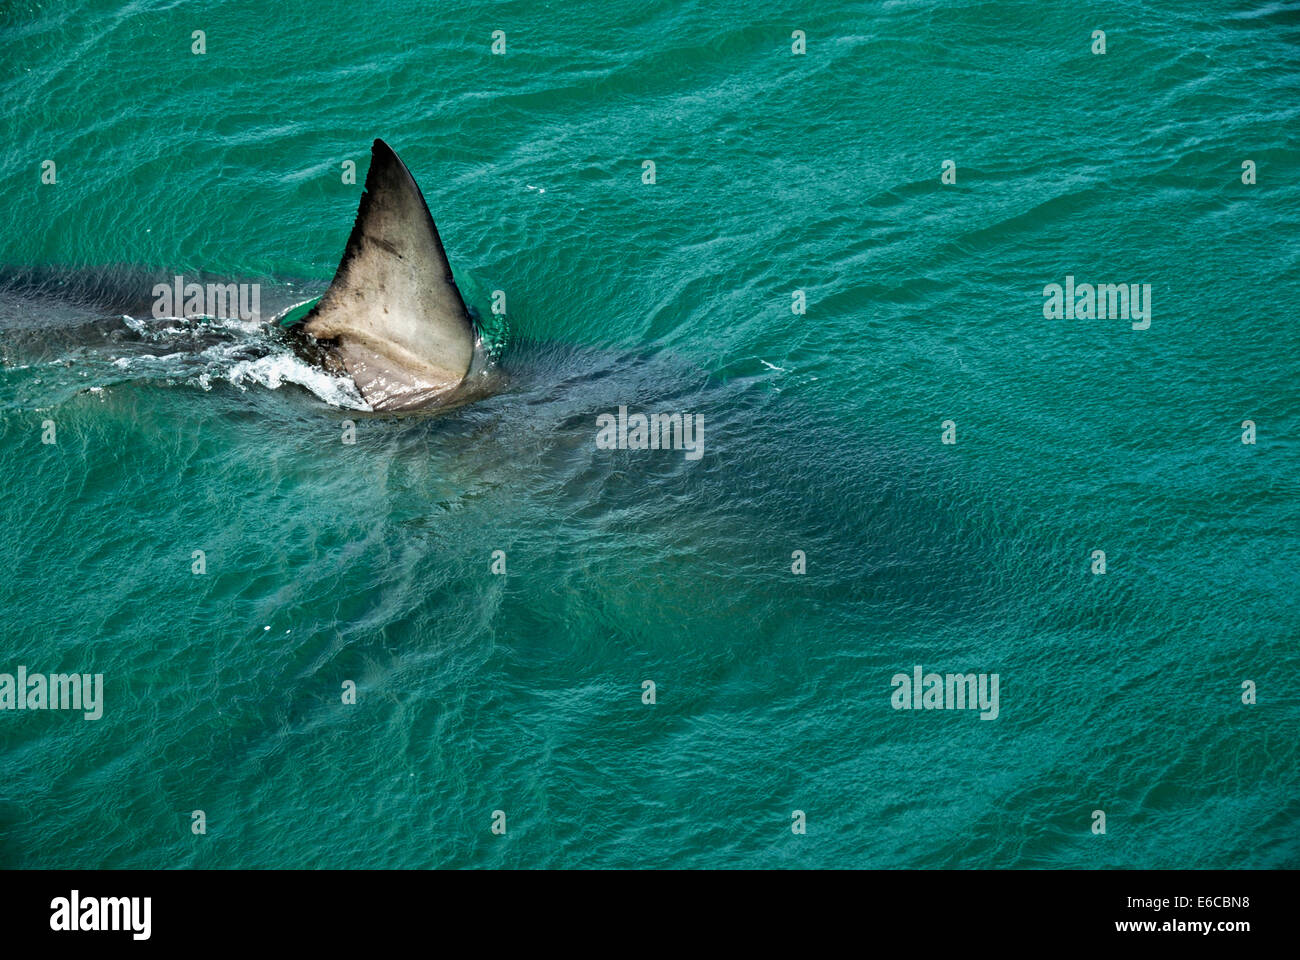 Pinna dorsale di un grande squalo bianco (Carcharodon carcharias) nuotare vicino alla superficie dell'acqua, Gansbaii, Sud Africa Foto Stock